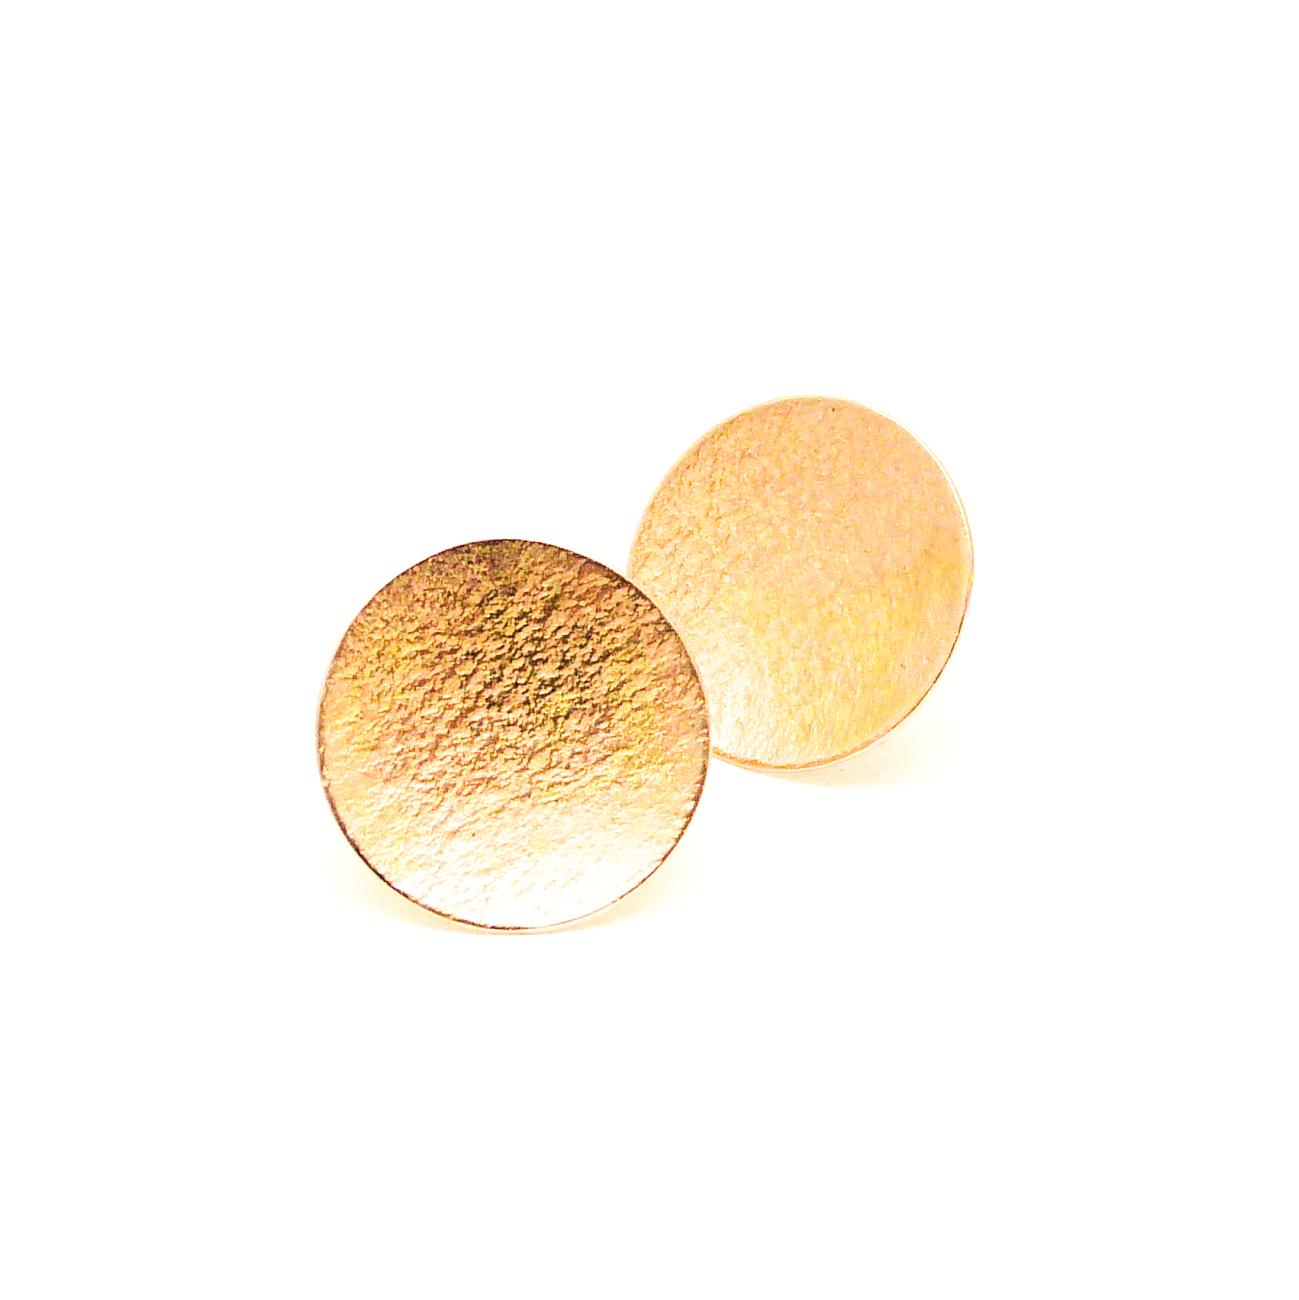 Mooi door zijn eenvoud, gehamerde oorbelletjes gemaakt van oud goud.